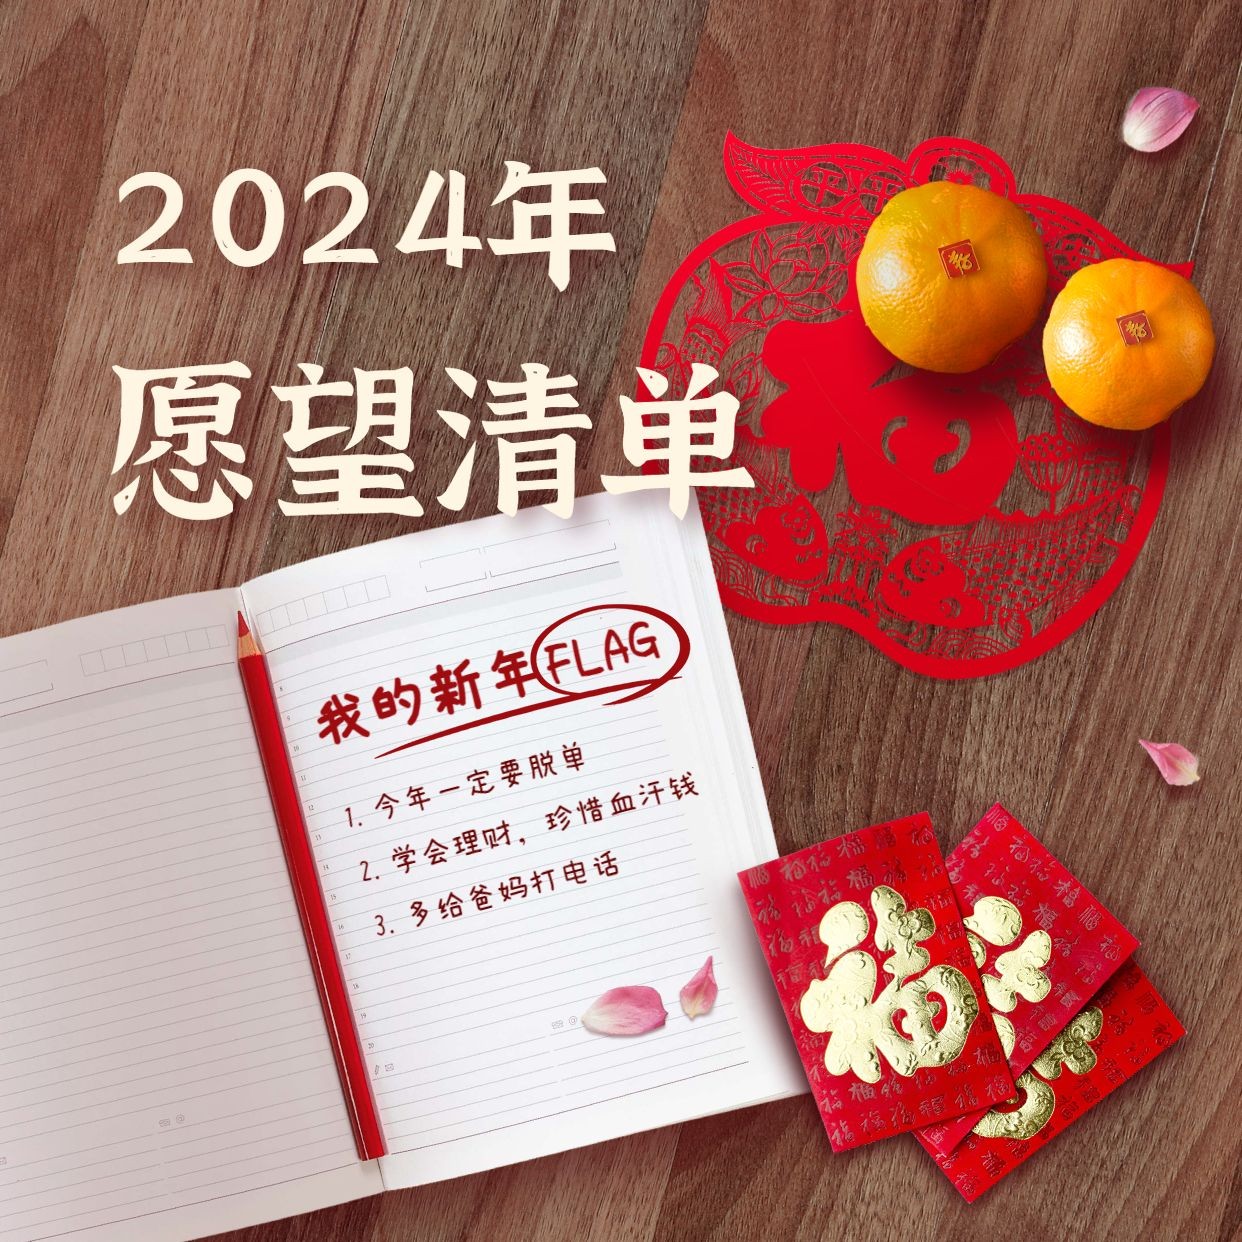 春节新年愿望清单实景海报